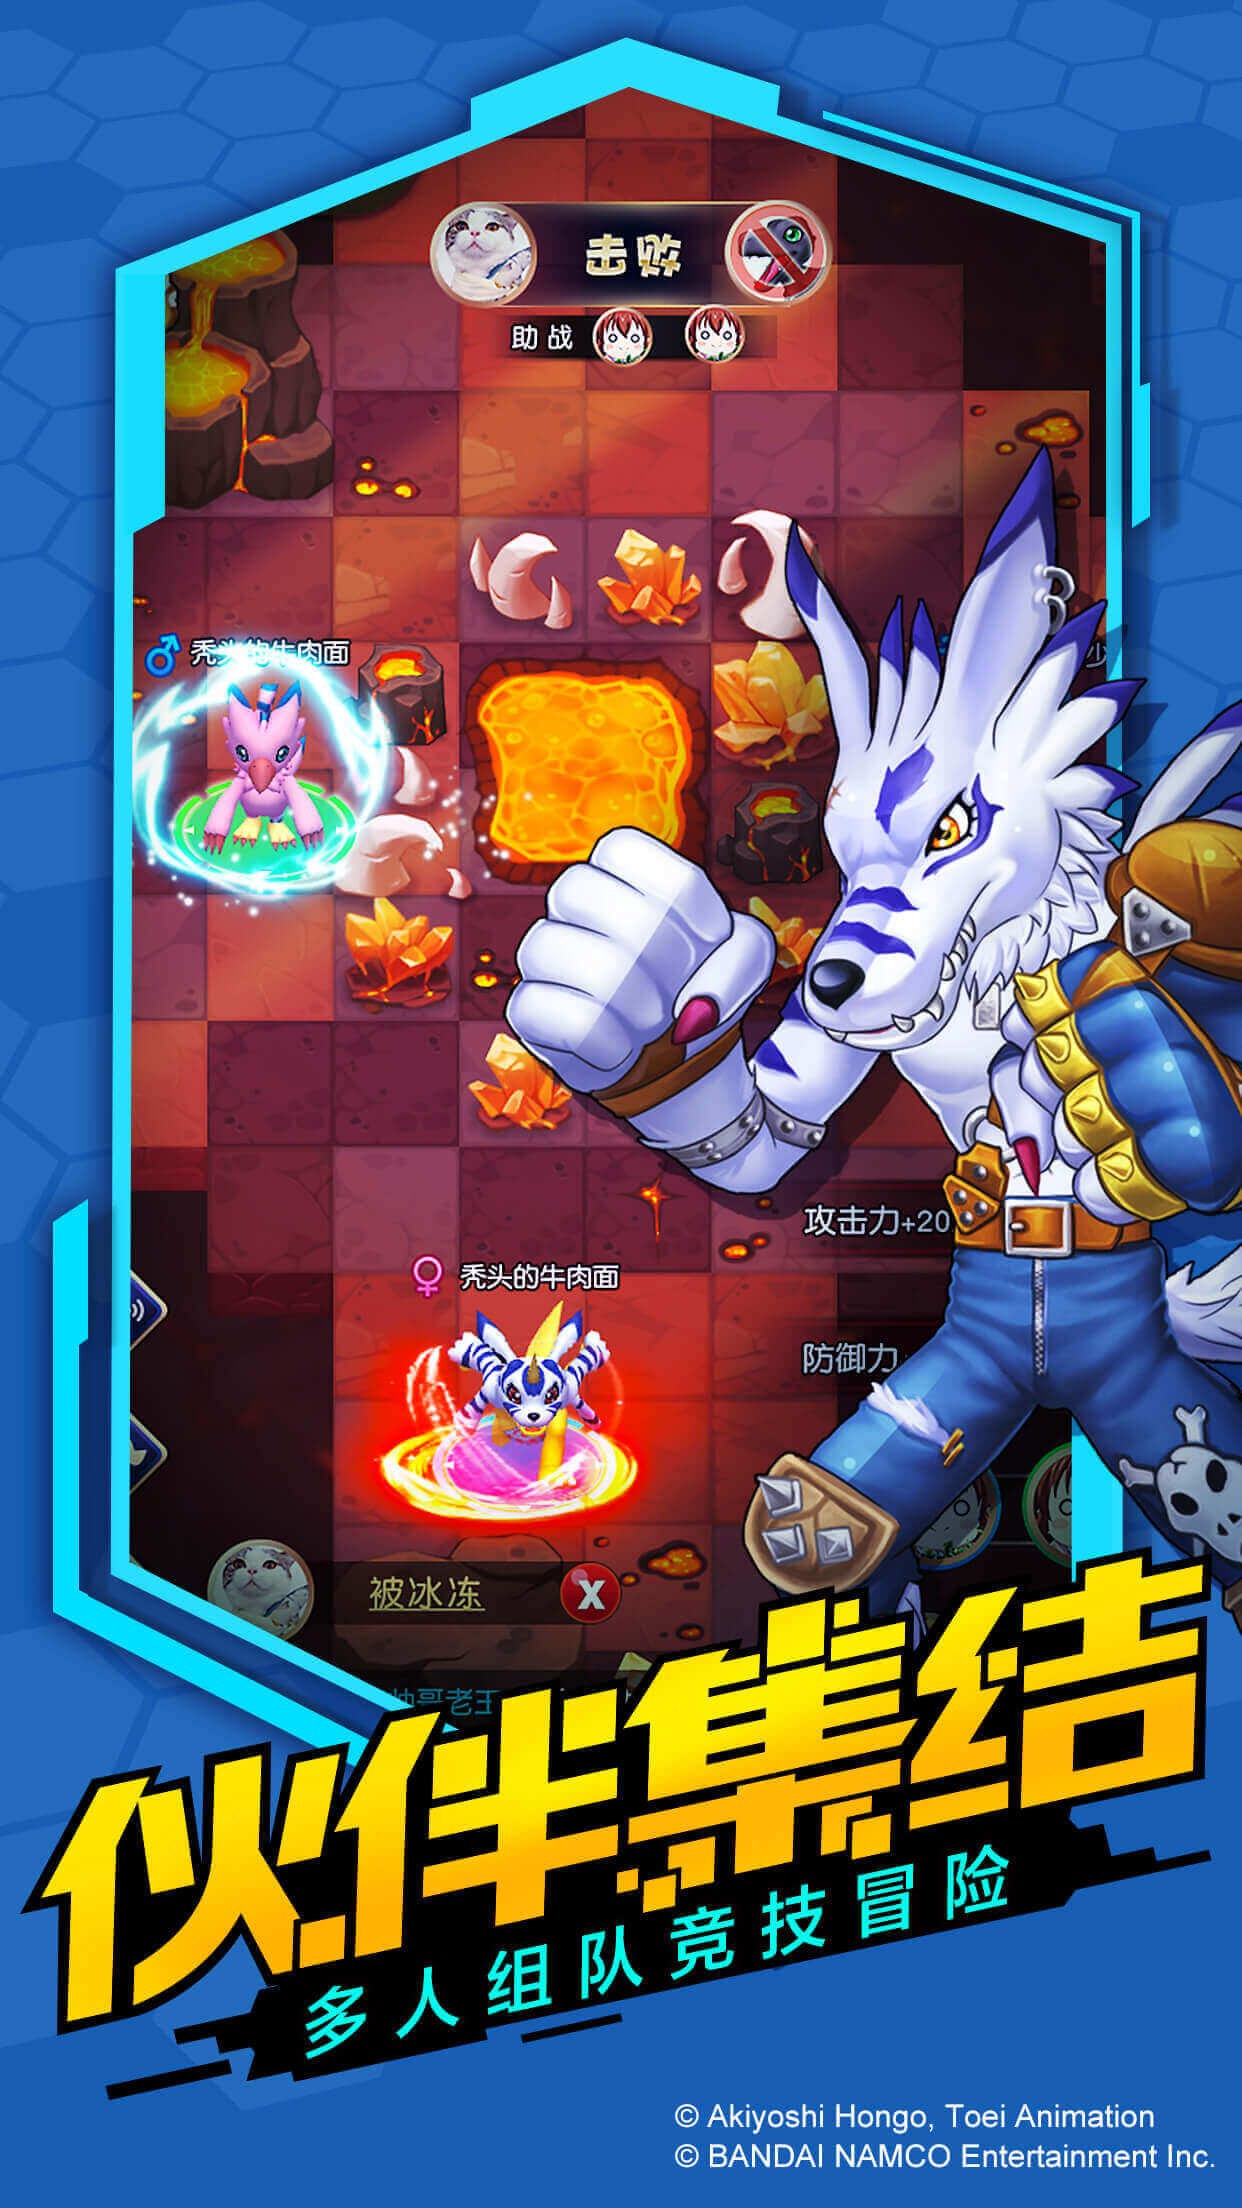 Digimon Encounter Bandai Namco announces new mobile